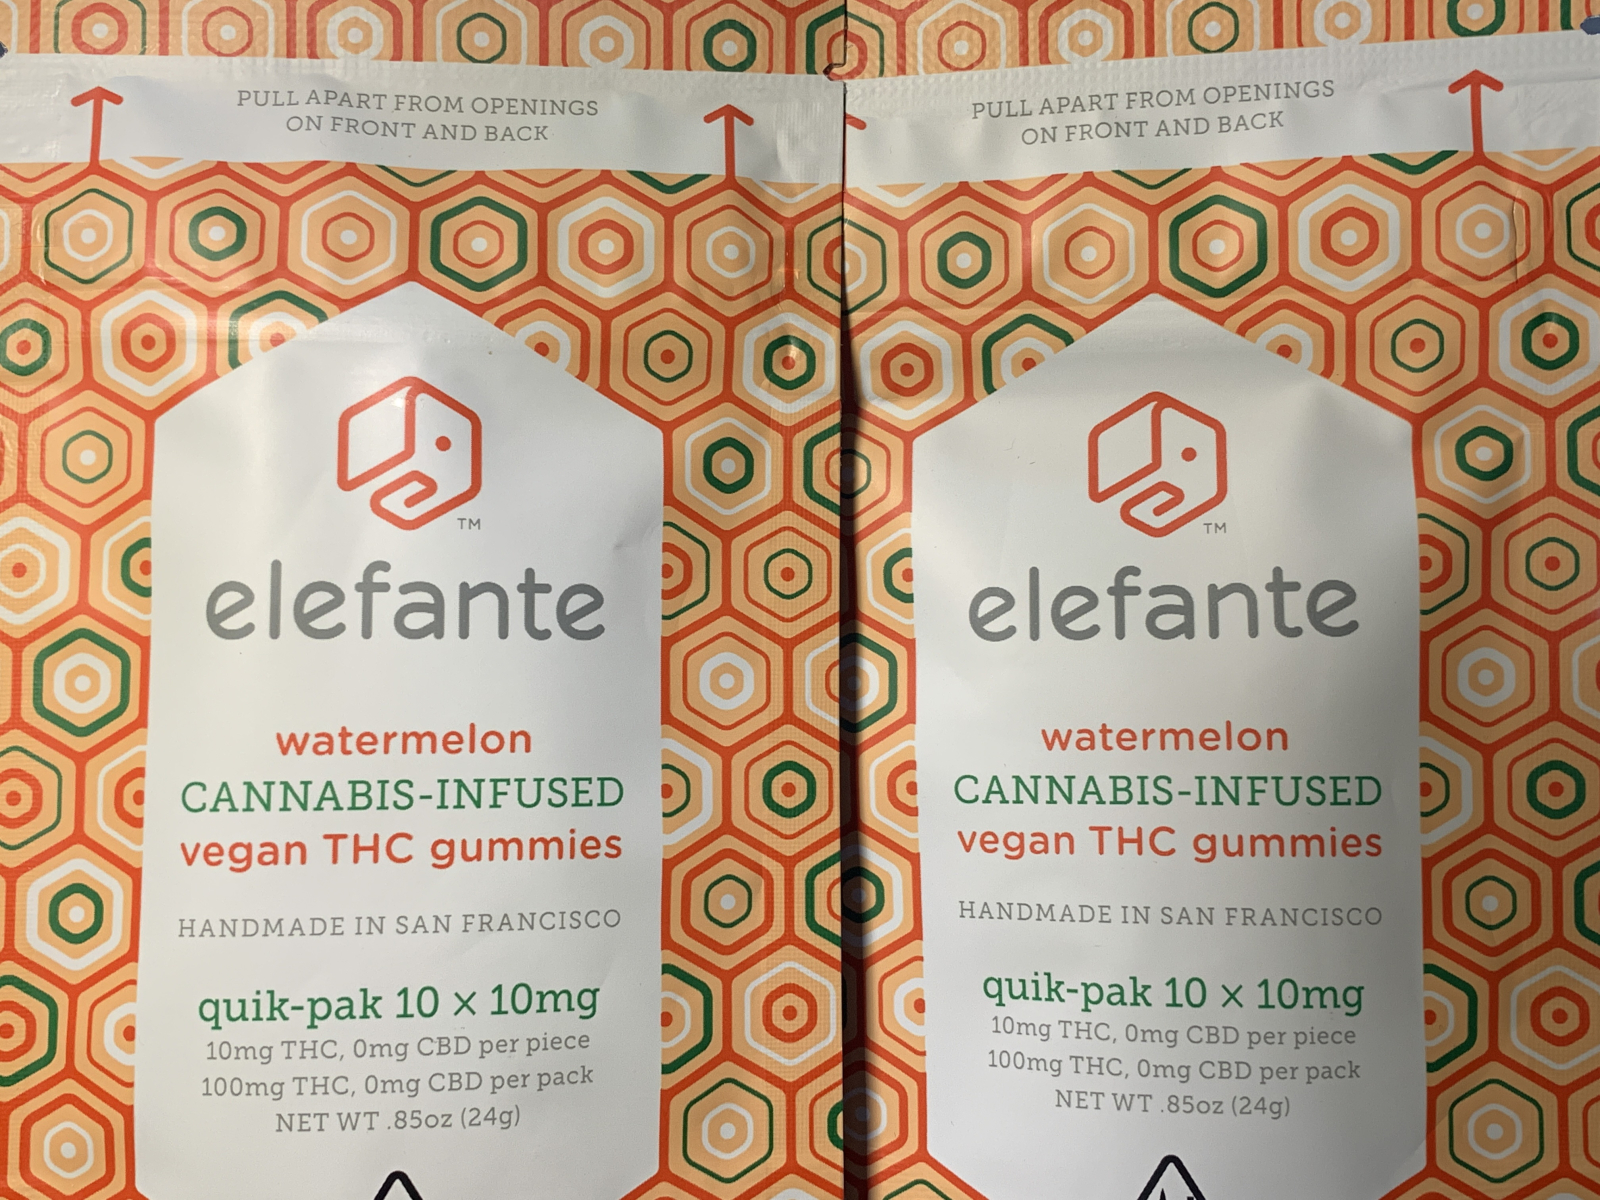 Elefante Watermelon 100 mg package thc infused vegan gummies